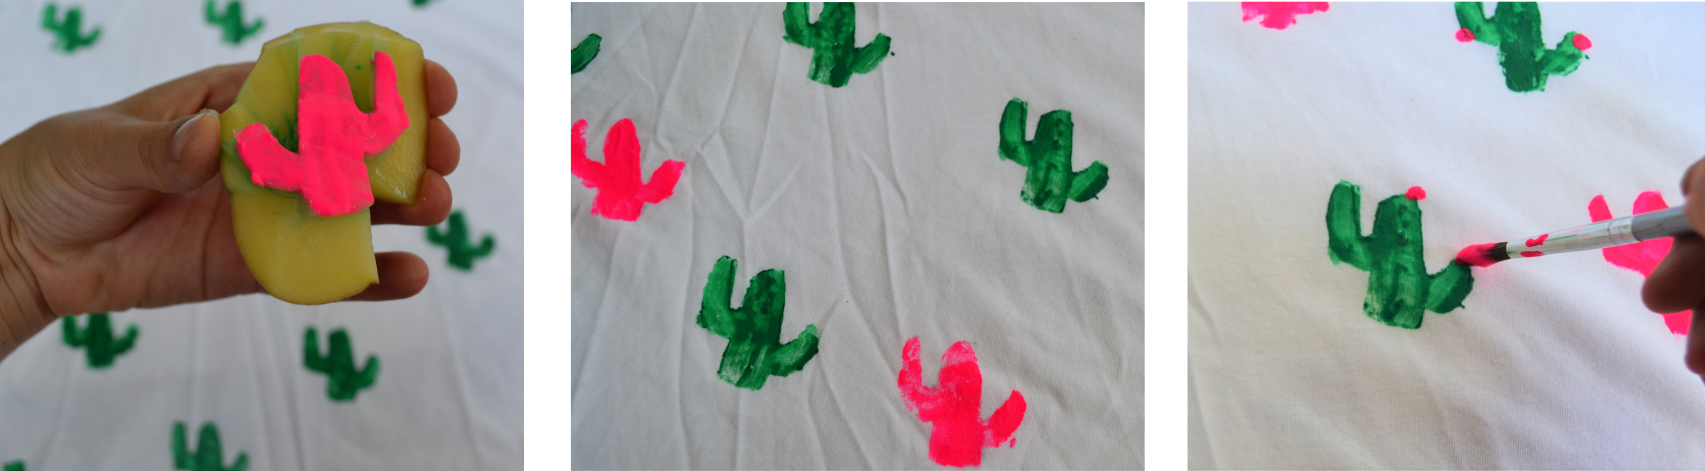 DIY tampons tee shirt cactus